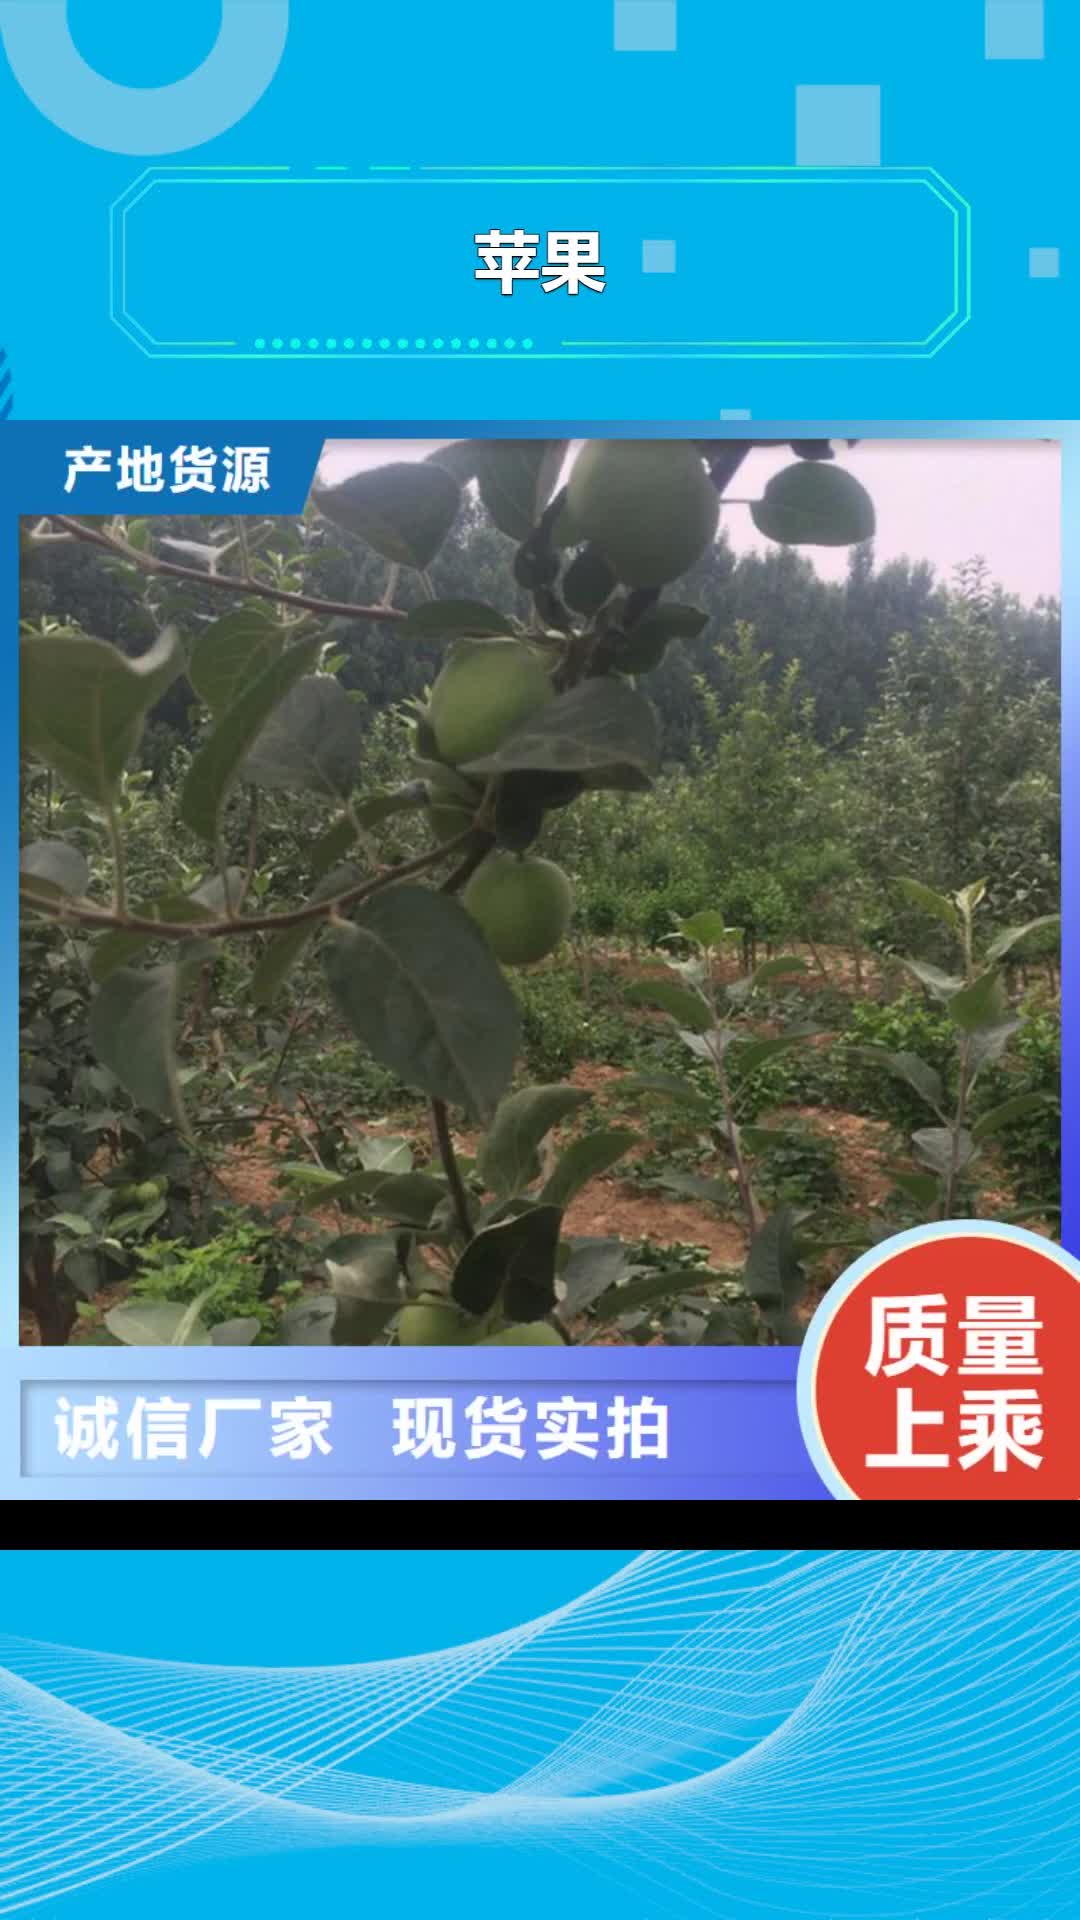 黑龙江 苹果【苹果苗】卓越品质正品保障